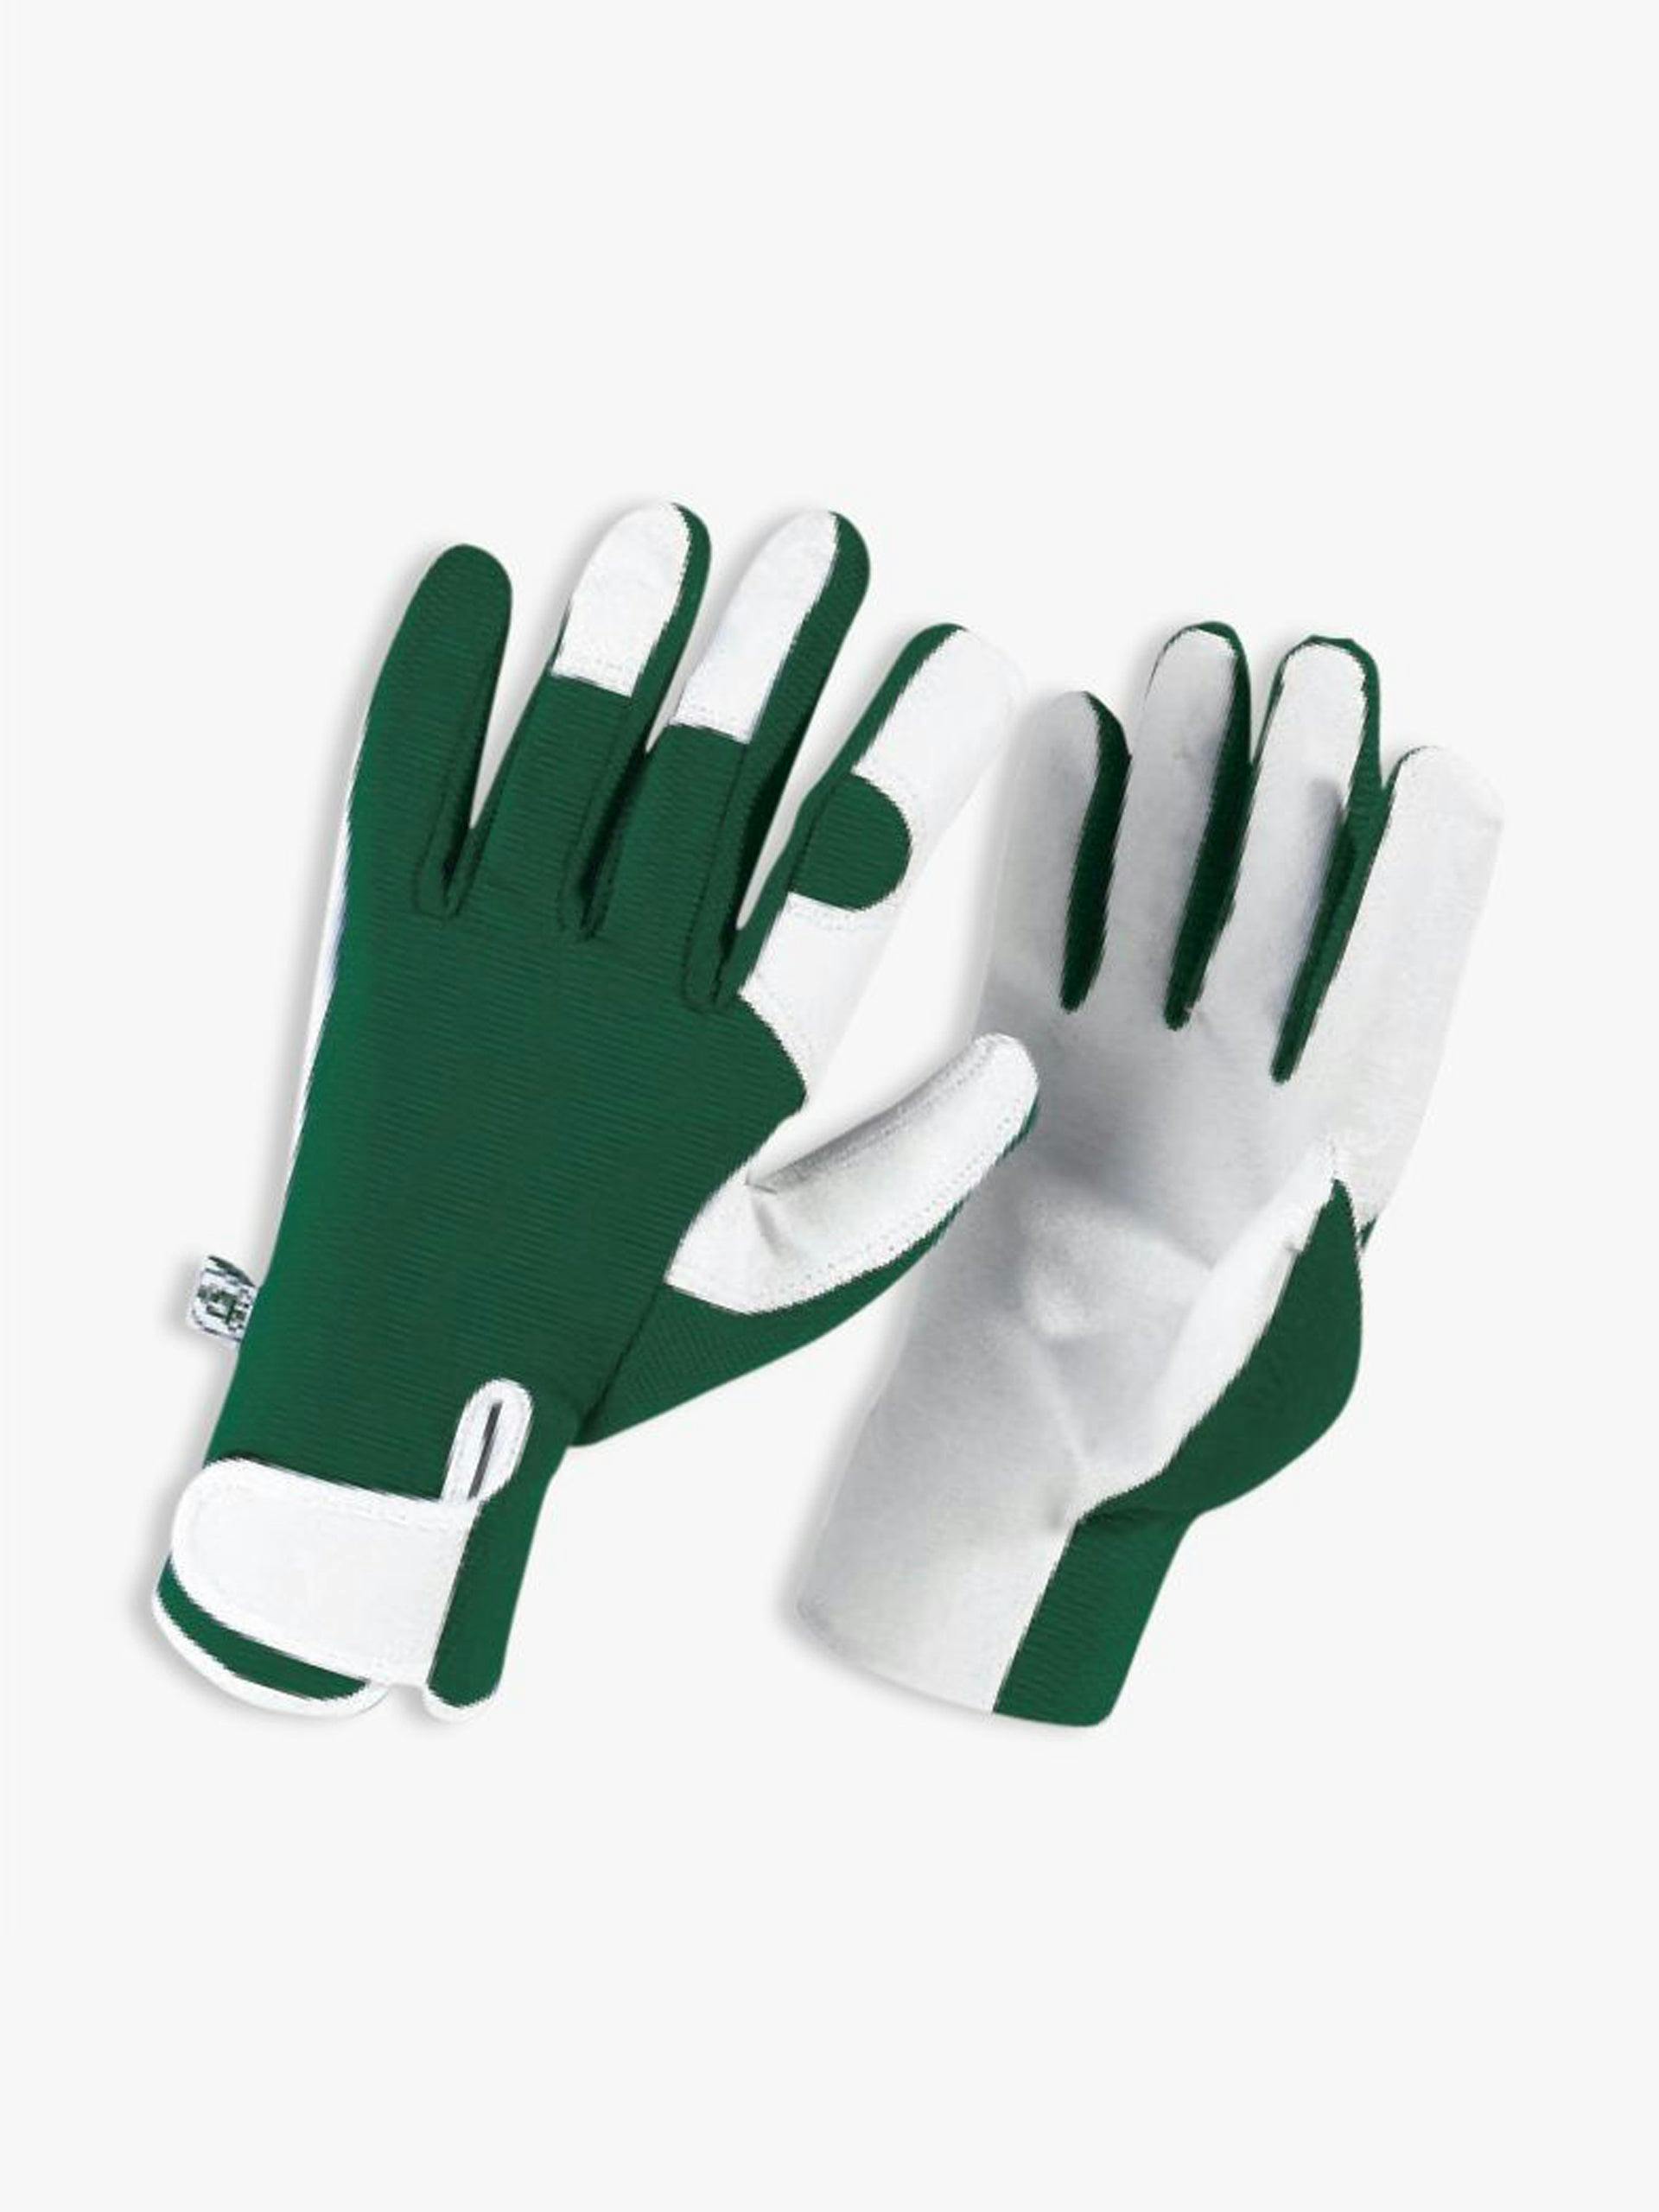 Men's gardening gloves